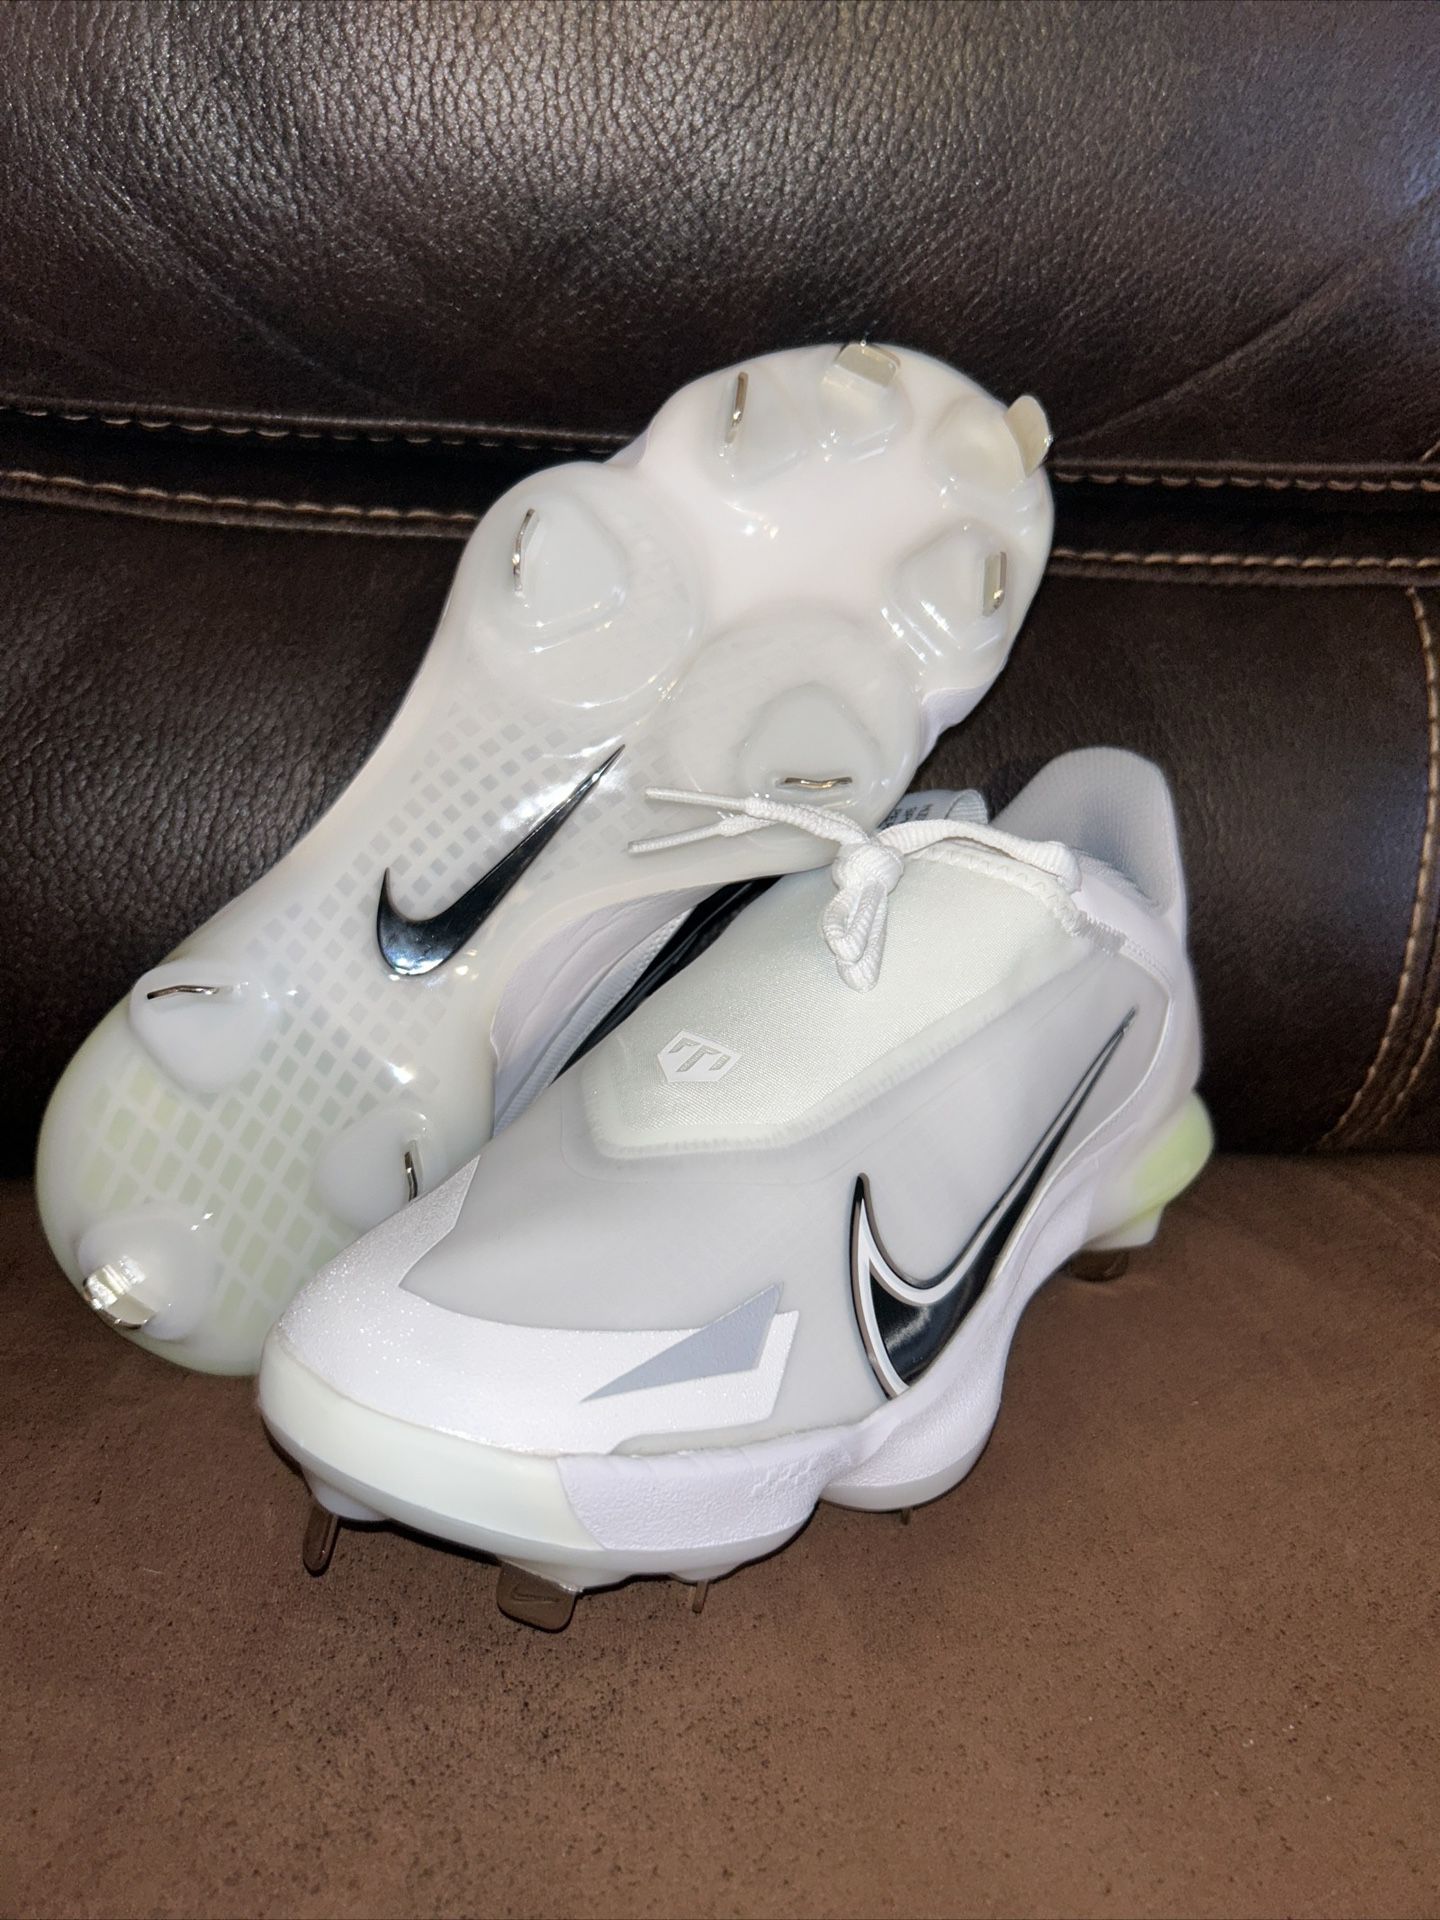 🔥SZ 11 Nike Force Zoom Trout 8 Pro White Metal Baseball Cleats CZ5915-100 Men